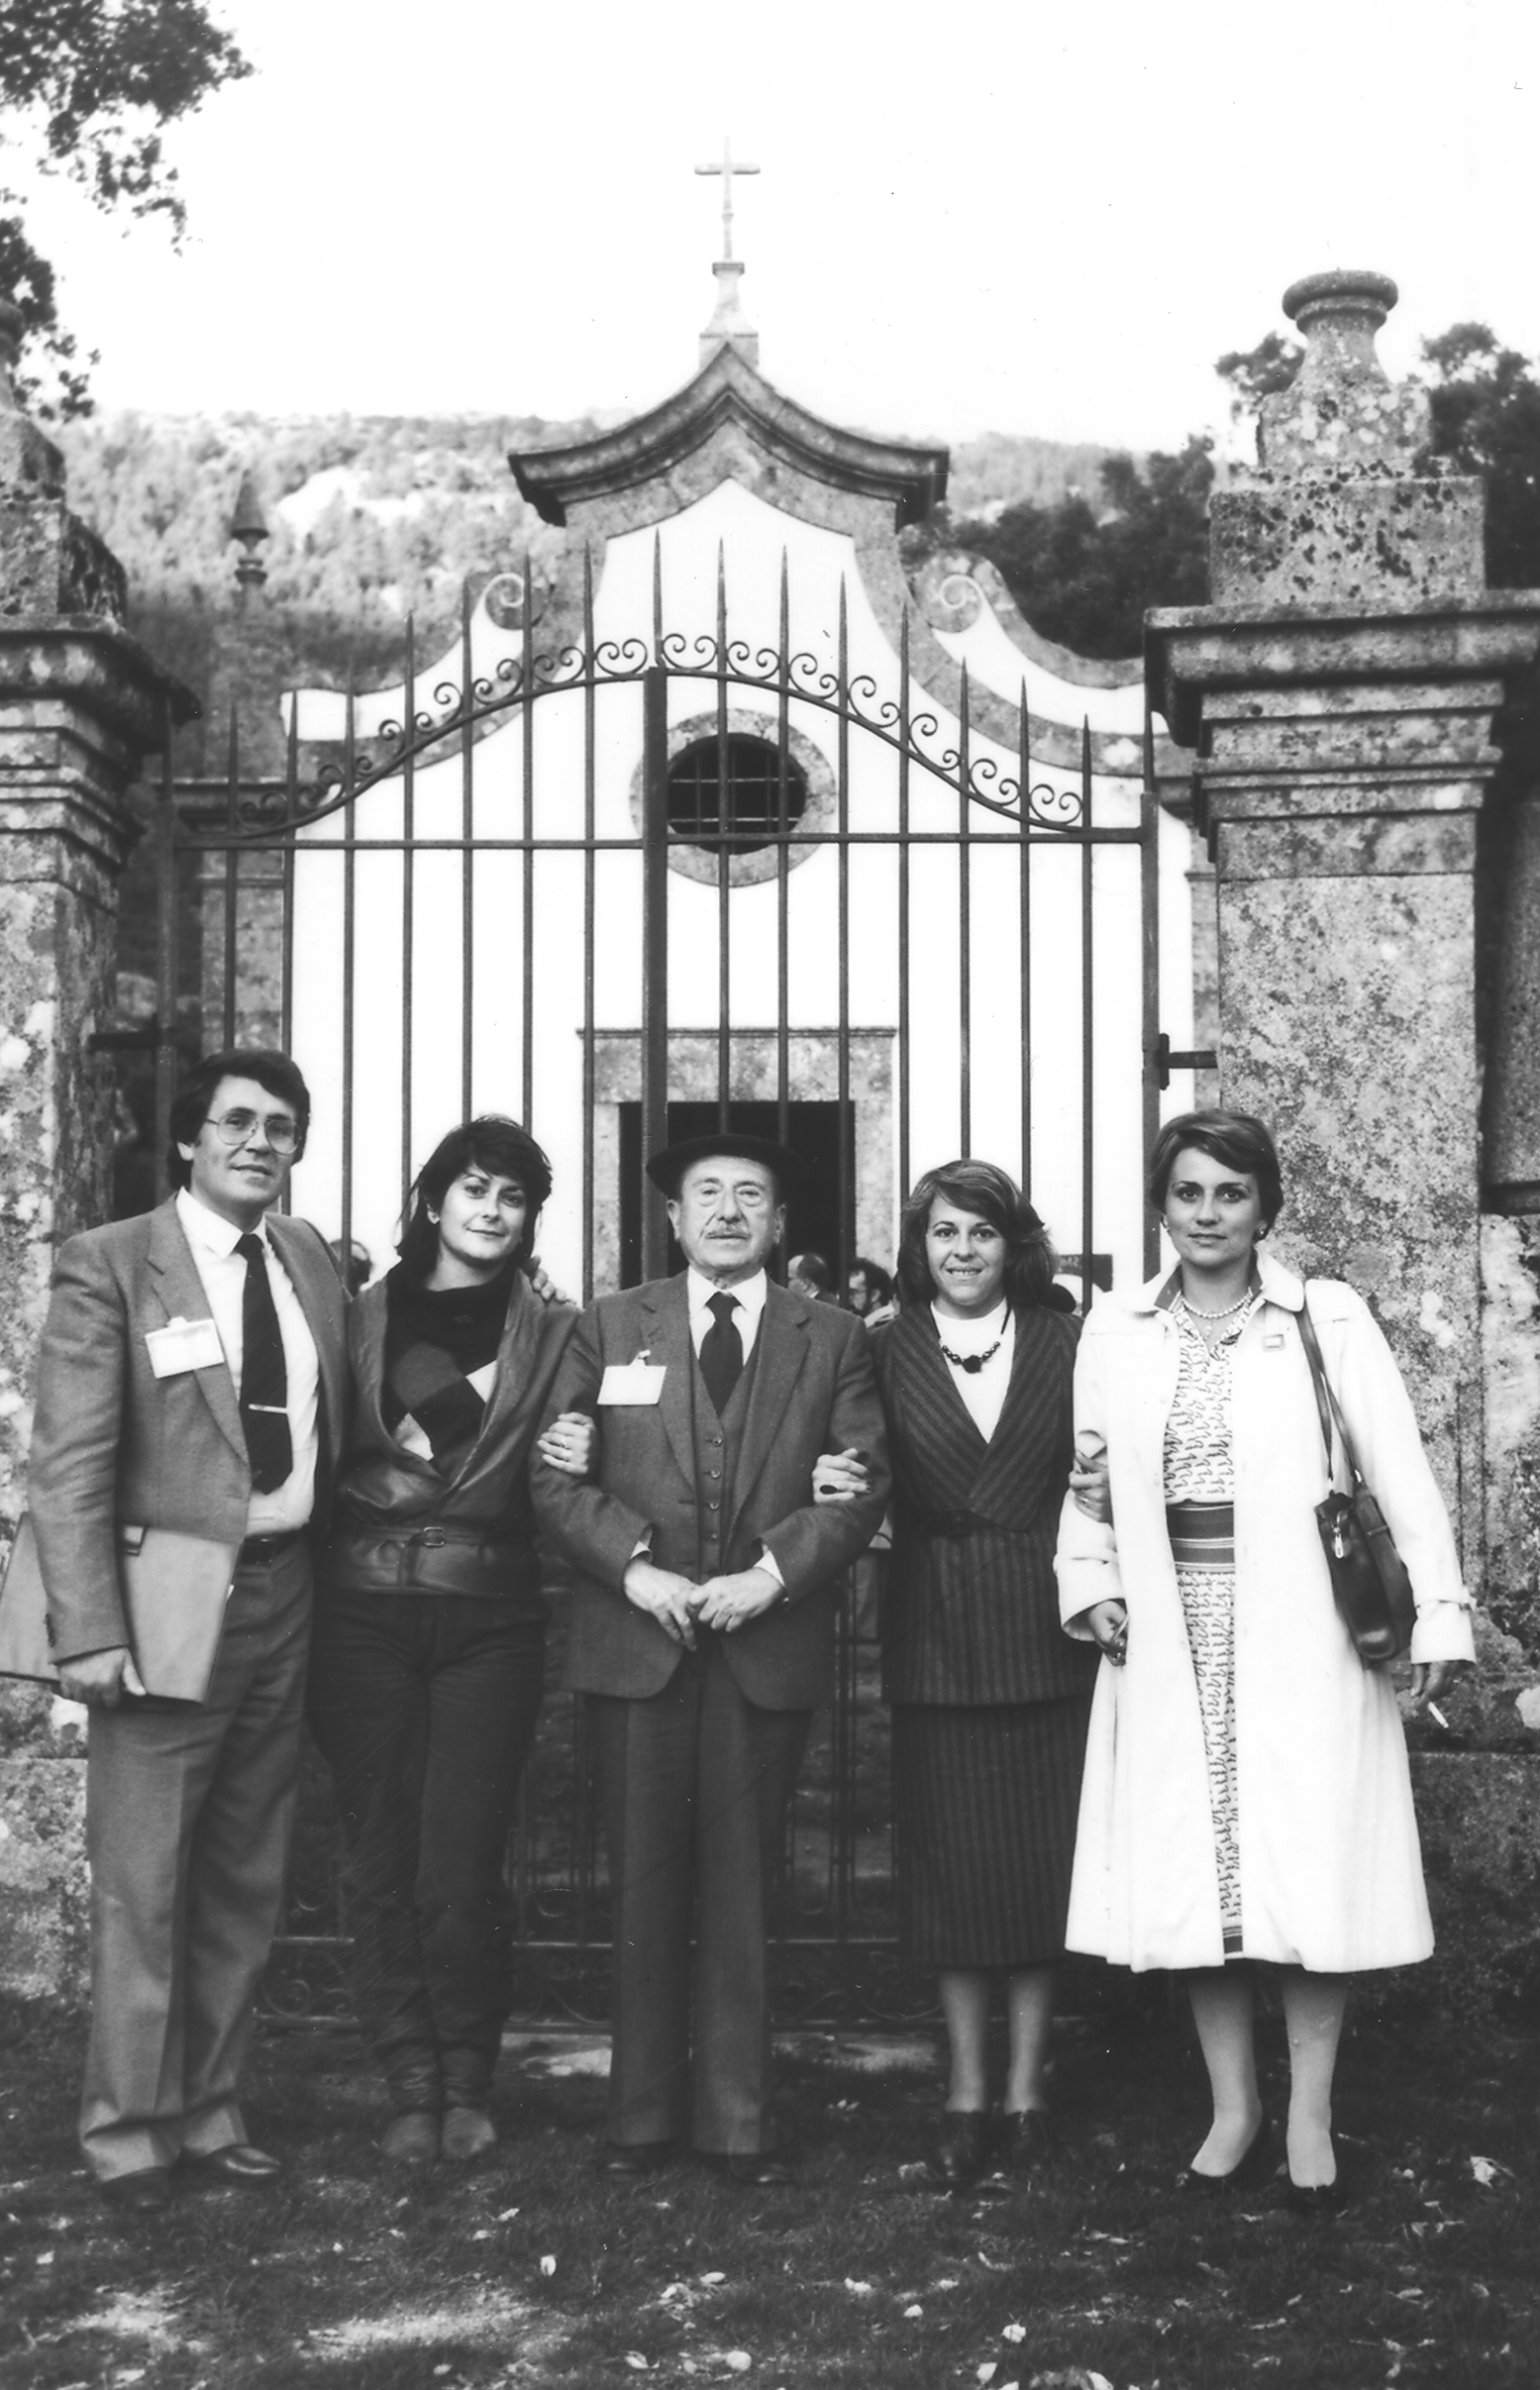 De esquerda para direita: Aracéli Herrero, Aurora Marco, Ricardo Carvalho Calero, Helena Alvaredo e José Luís Rodriguez. Seminário Luso Galaico do VII Centenário do Foral de Caminha (19-21 de Outubro de 1984)